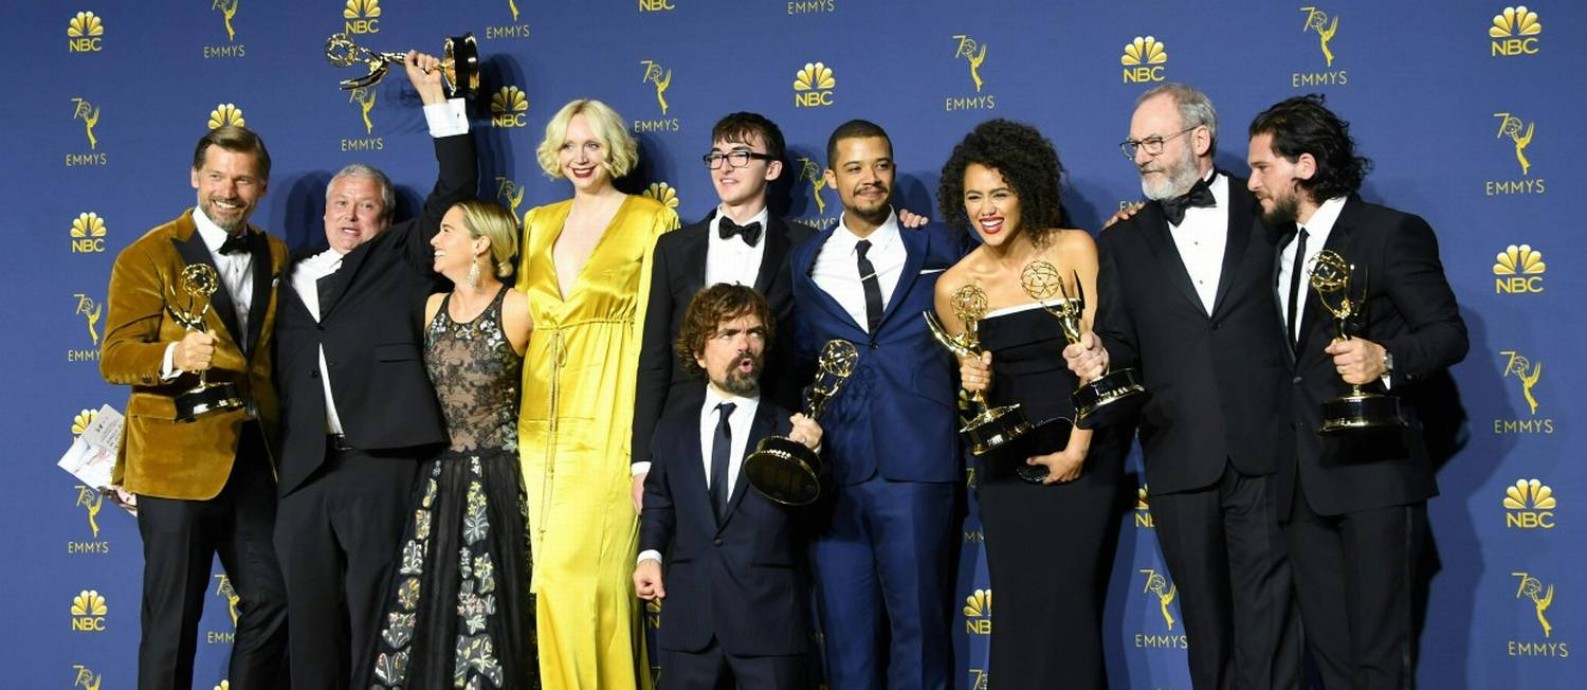 O elenco de Game of Thrones posa com o Emmy de melhor Série Dramática Foto: VALERIE MACON / AFP